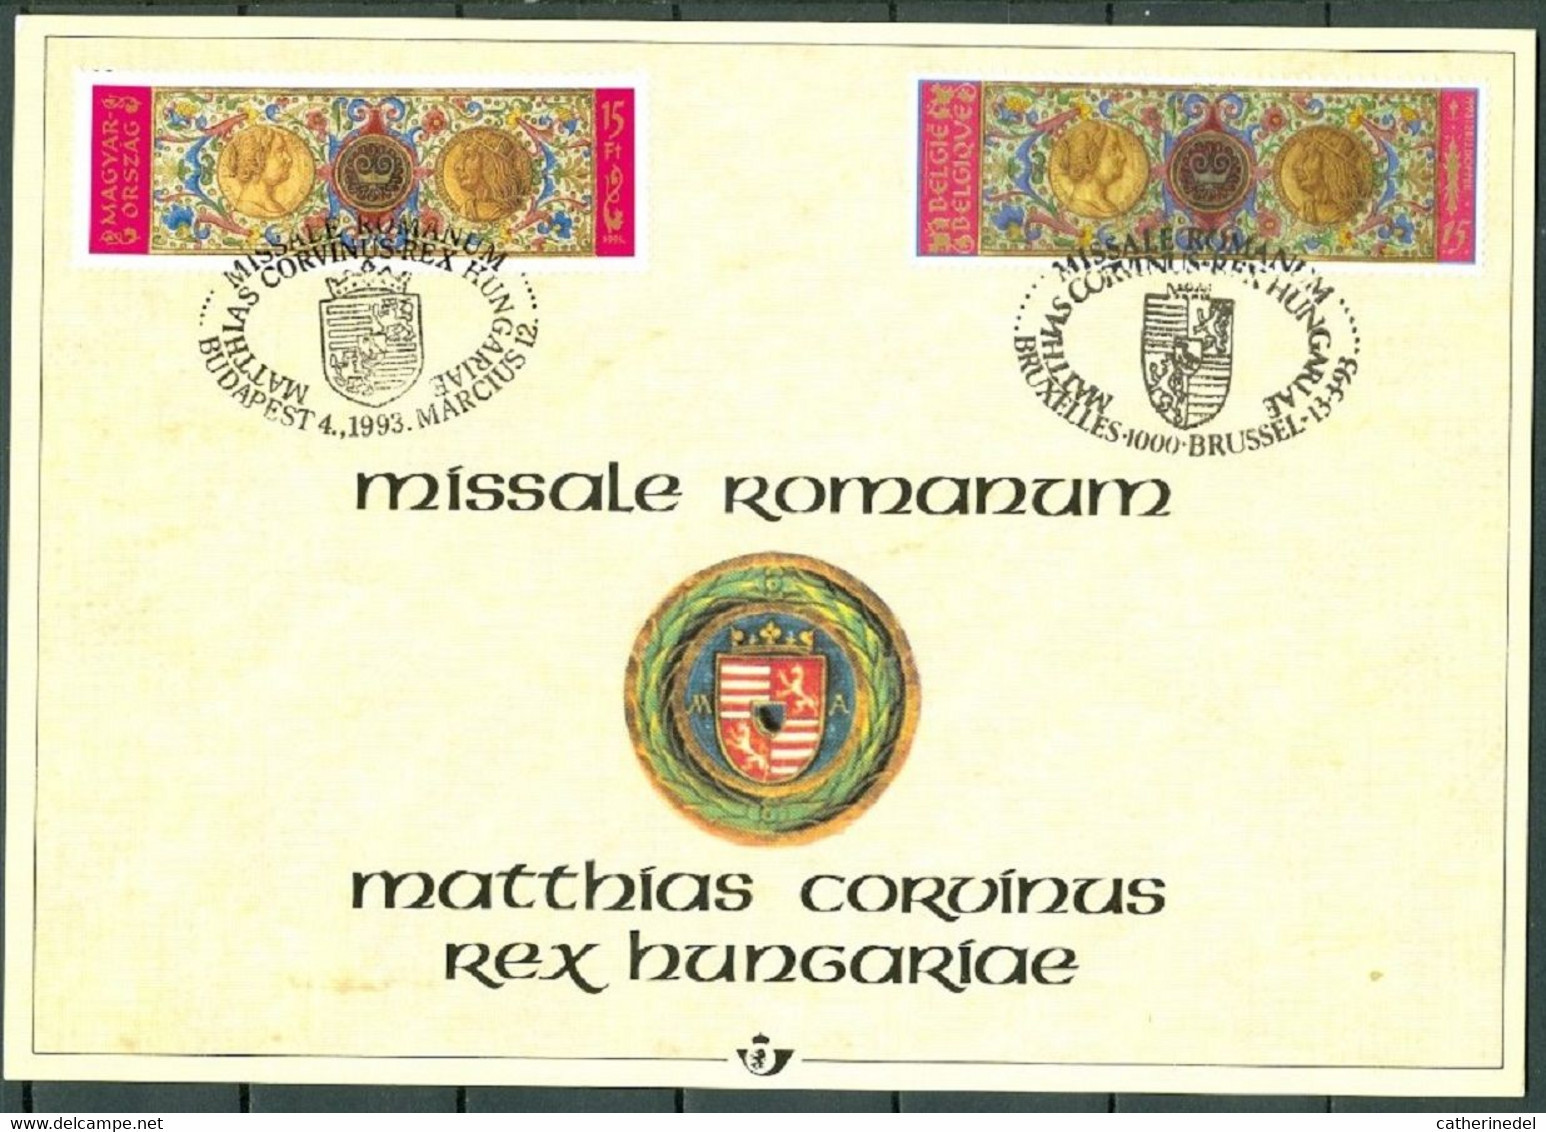 Année 1993 : Carte Souvenir 2492HK - Histoire - Missale Romanum - Cartes Souvenir – Emissions Communes [HK]